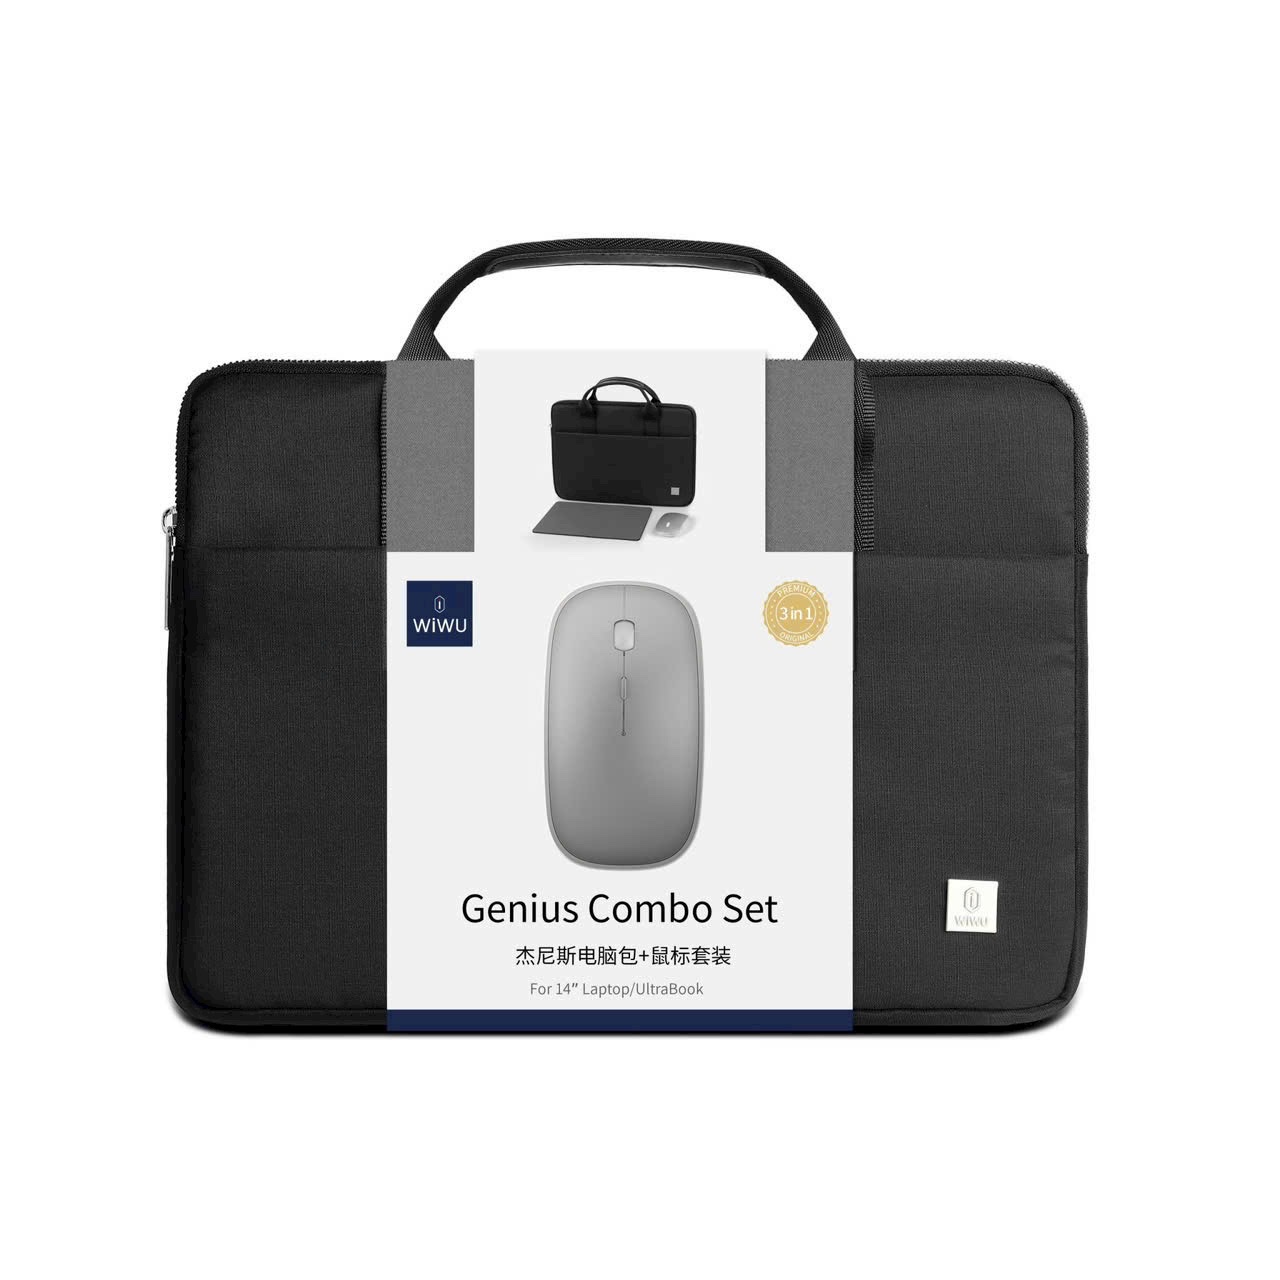 Túi Wiwu Genius Combo Set 3 in 1 cho laptop, macbook gồm túi chống sốc + chuột + lót chuột, làm bằng Polyester chống nước, nhẹ và chống mài mòn - Hàng chính hãng